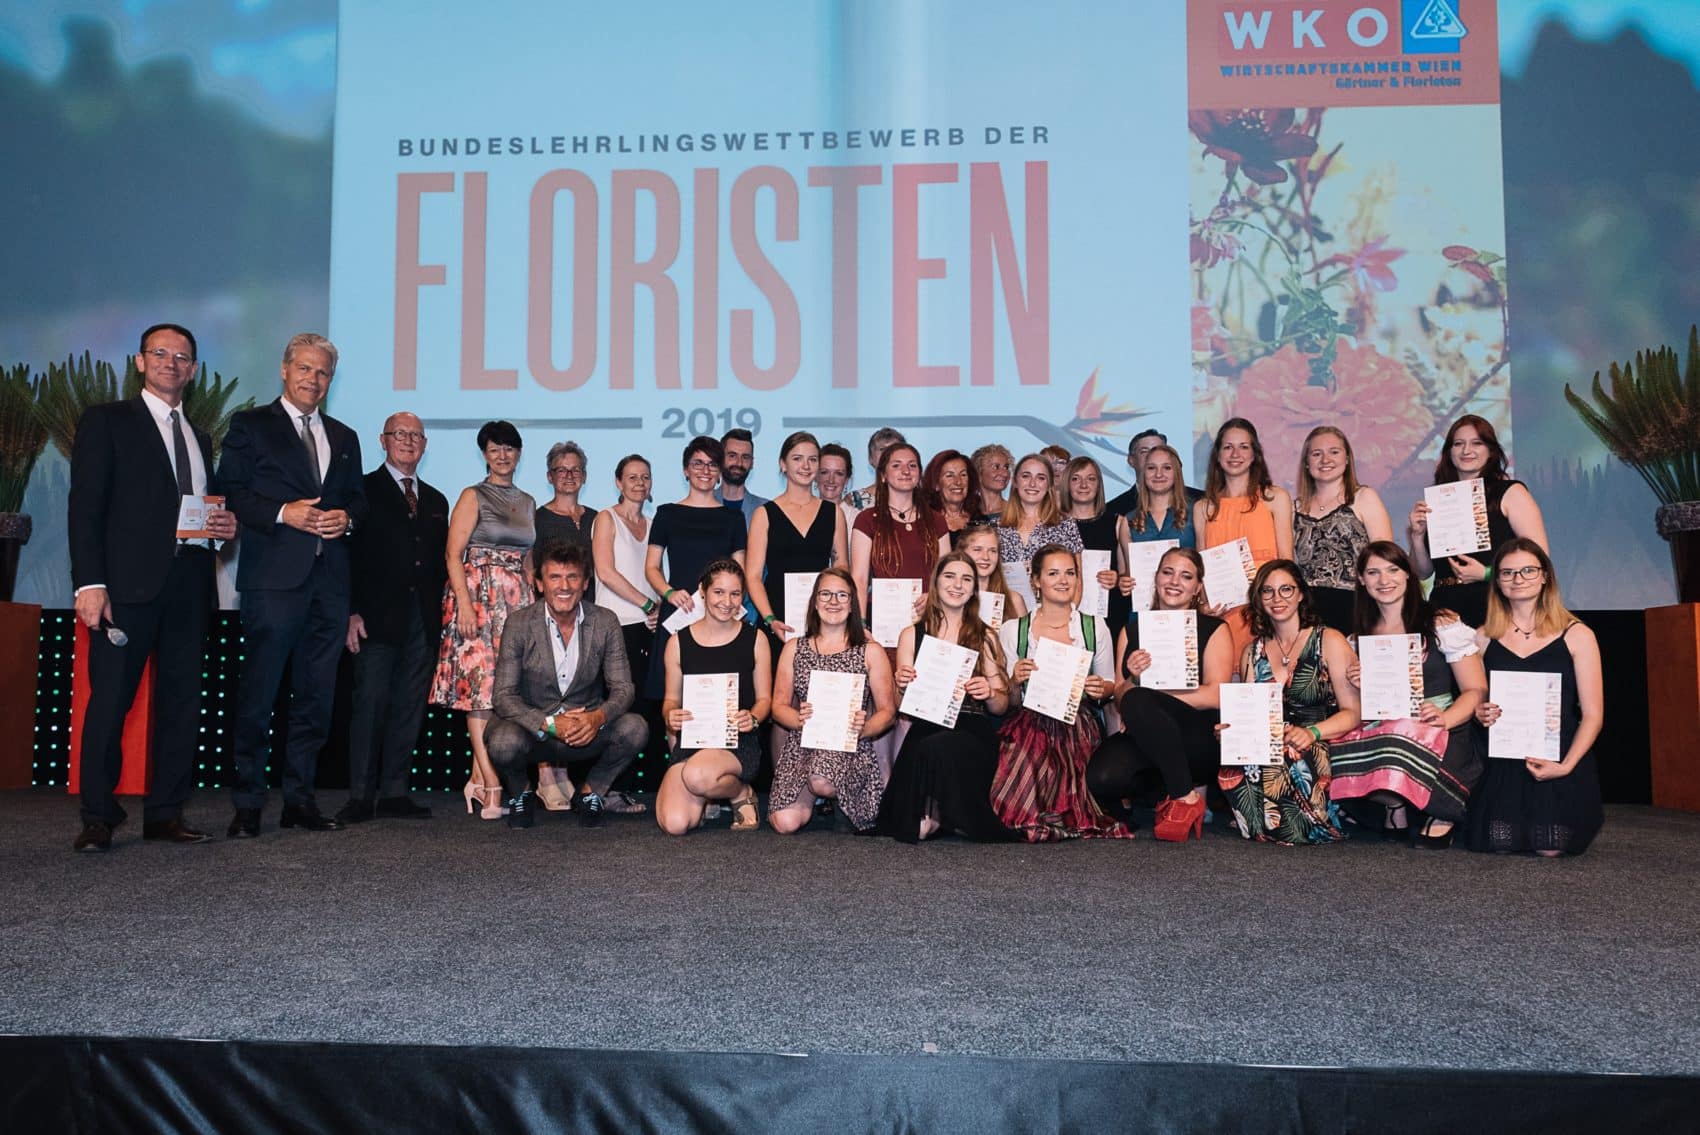 Unter dem diesjährigen Motto „Musik einer Weltstadt“ fand der Bundeslehrlingswettbewerb der Floristen statt.